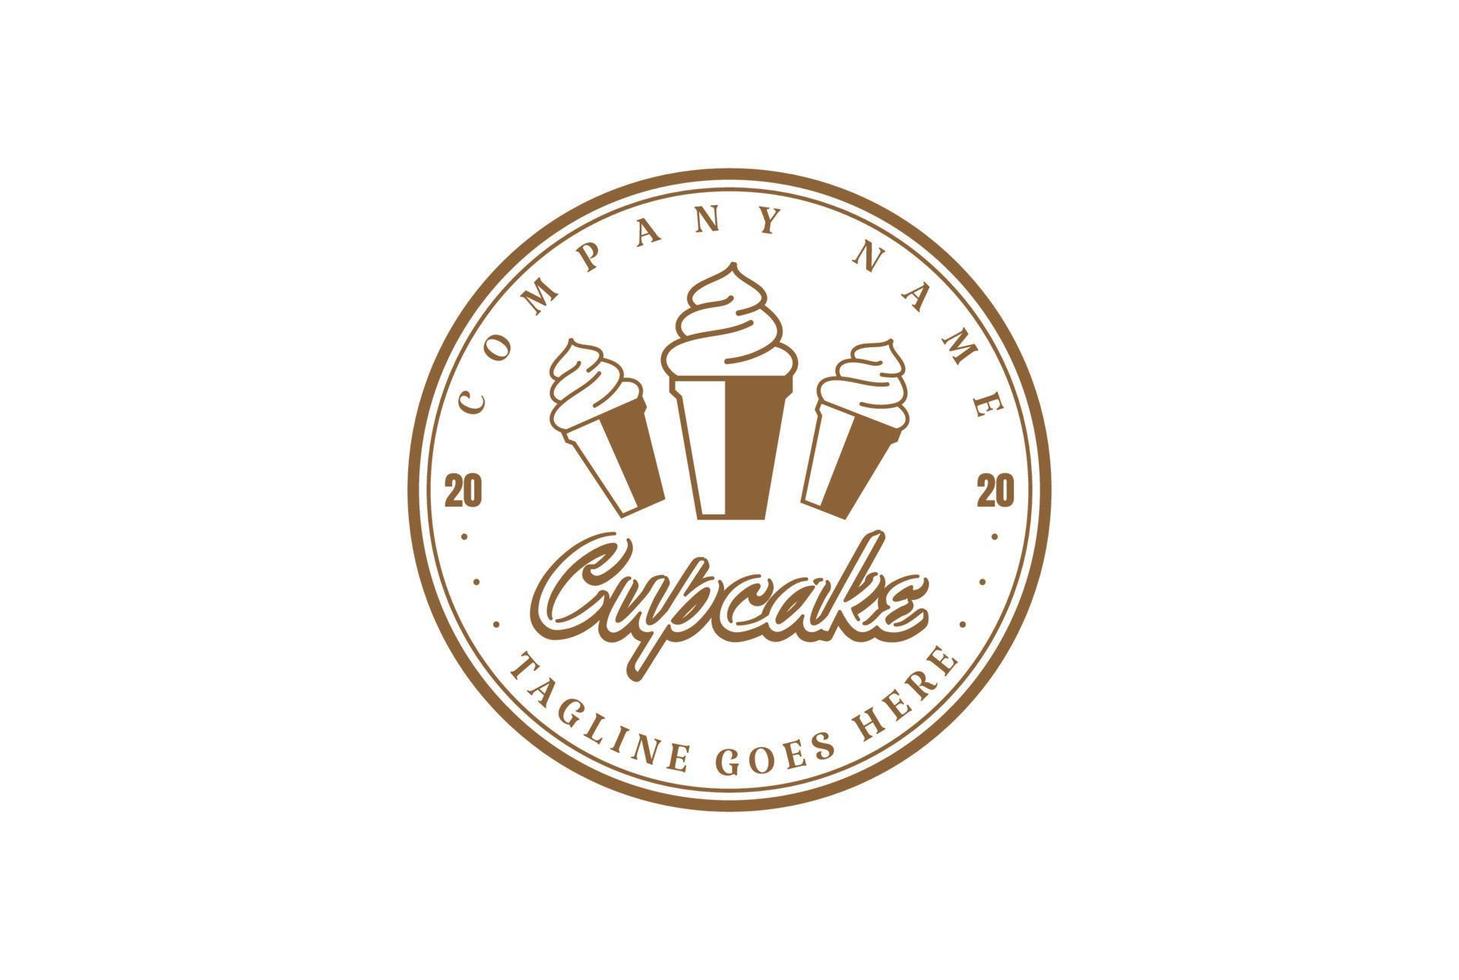 vintage retrò cupcake o gelato distintivo emblema etichetta timbro logo disegno vettoriale